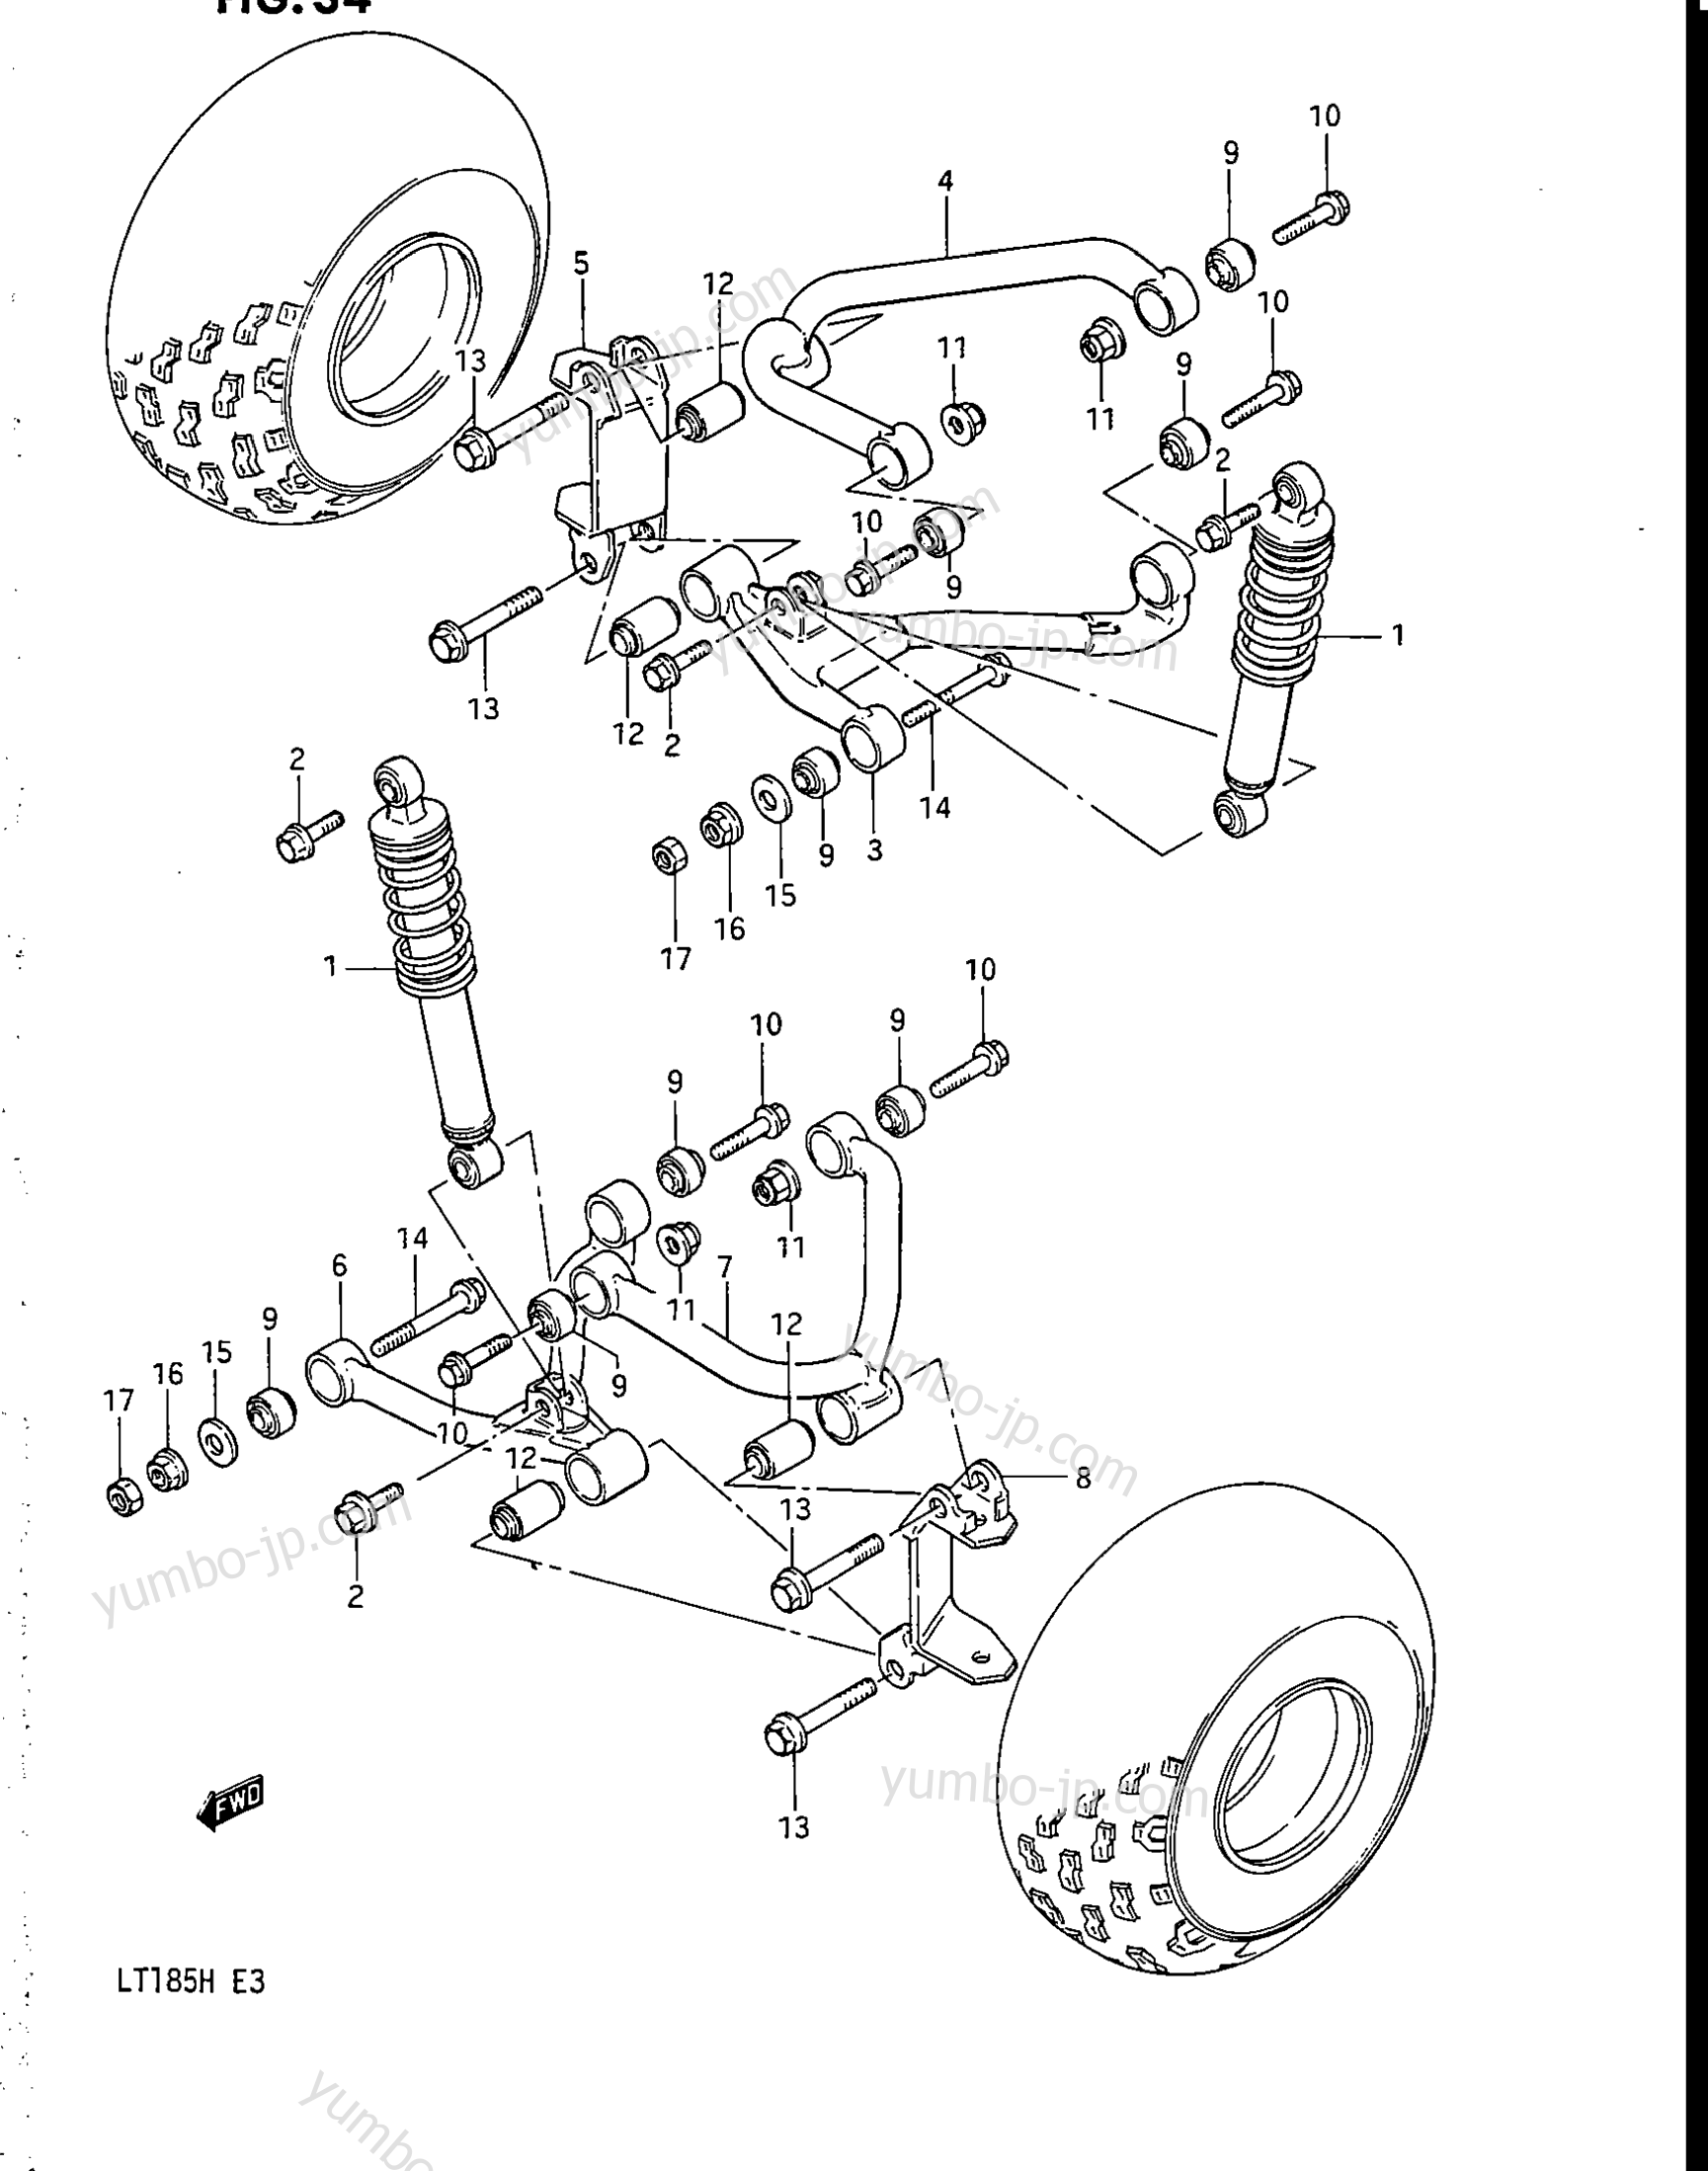 SUSPENSION ARM for ATVs SUZUKI LT185 1985 year